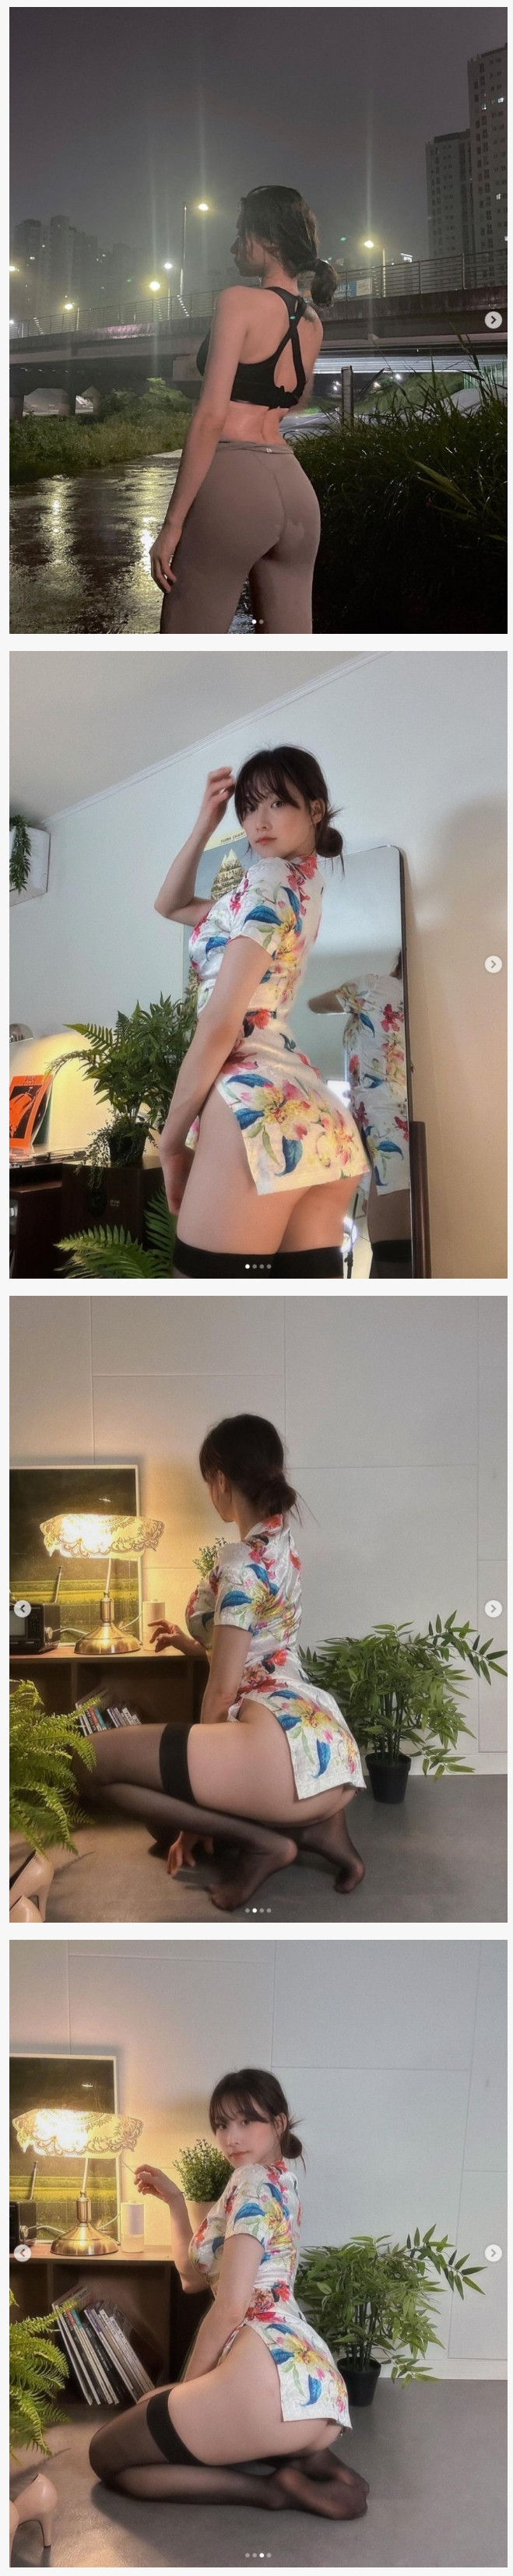 기립근과 엉덩이 노출에 항상 진심인 명아츄 비키니+속옷 착샷